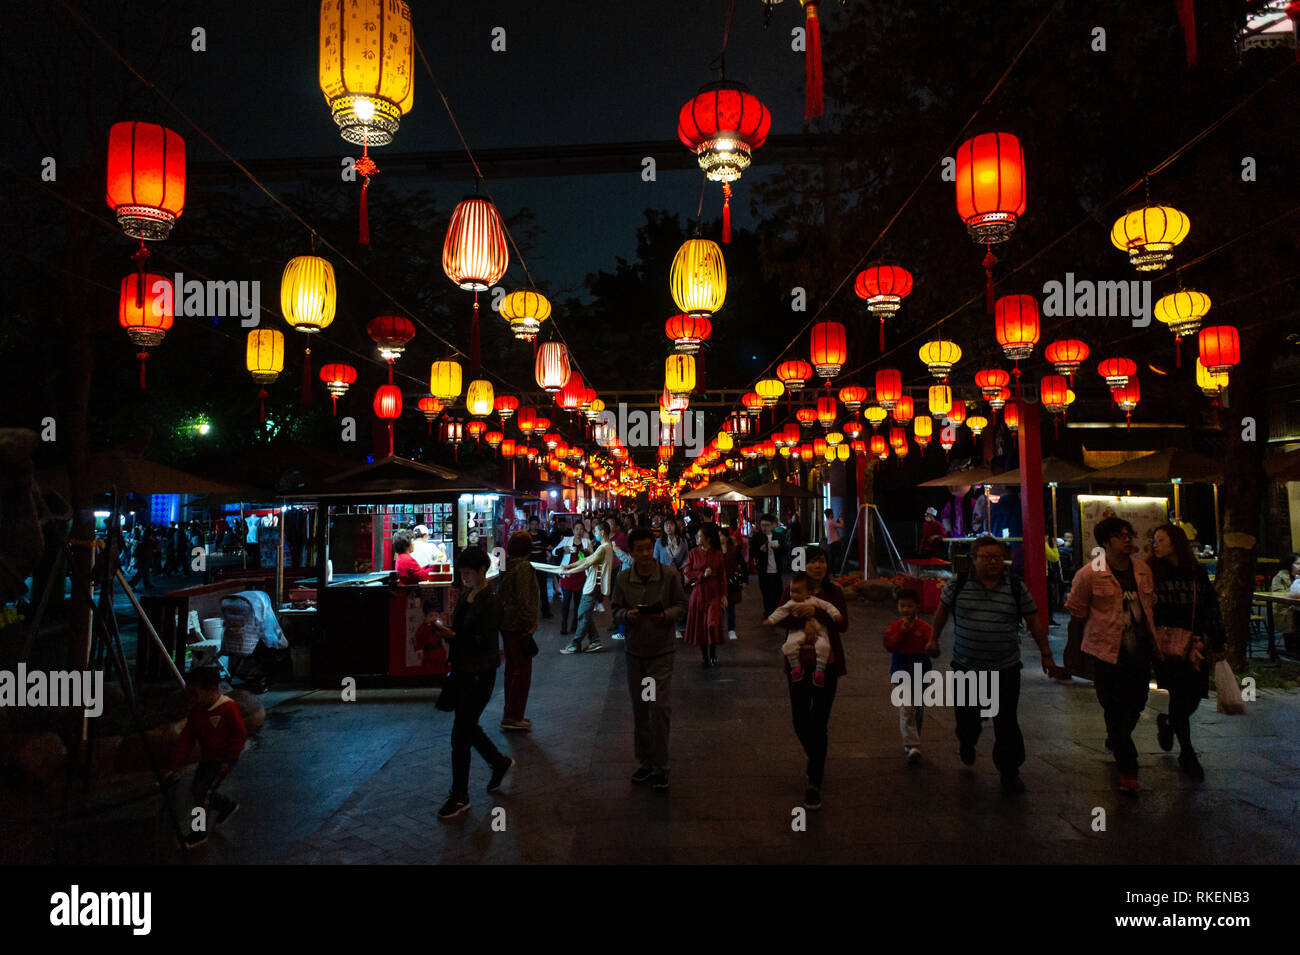 Chinesische Laternen in der Nacht, mit Menschen im Schatten, am Laternenfest gefeiert mit bunten Laternen Displays und Dekorationen im Splendid China, chinesische Kultur Themenpark in Shenzhen, China. Stockfoto